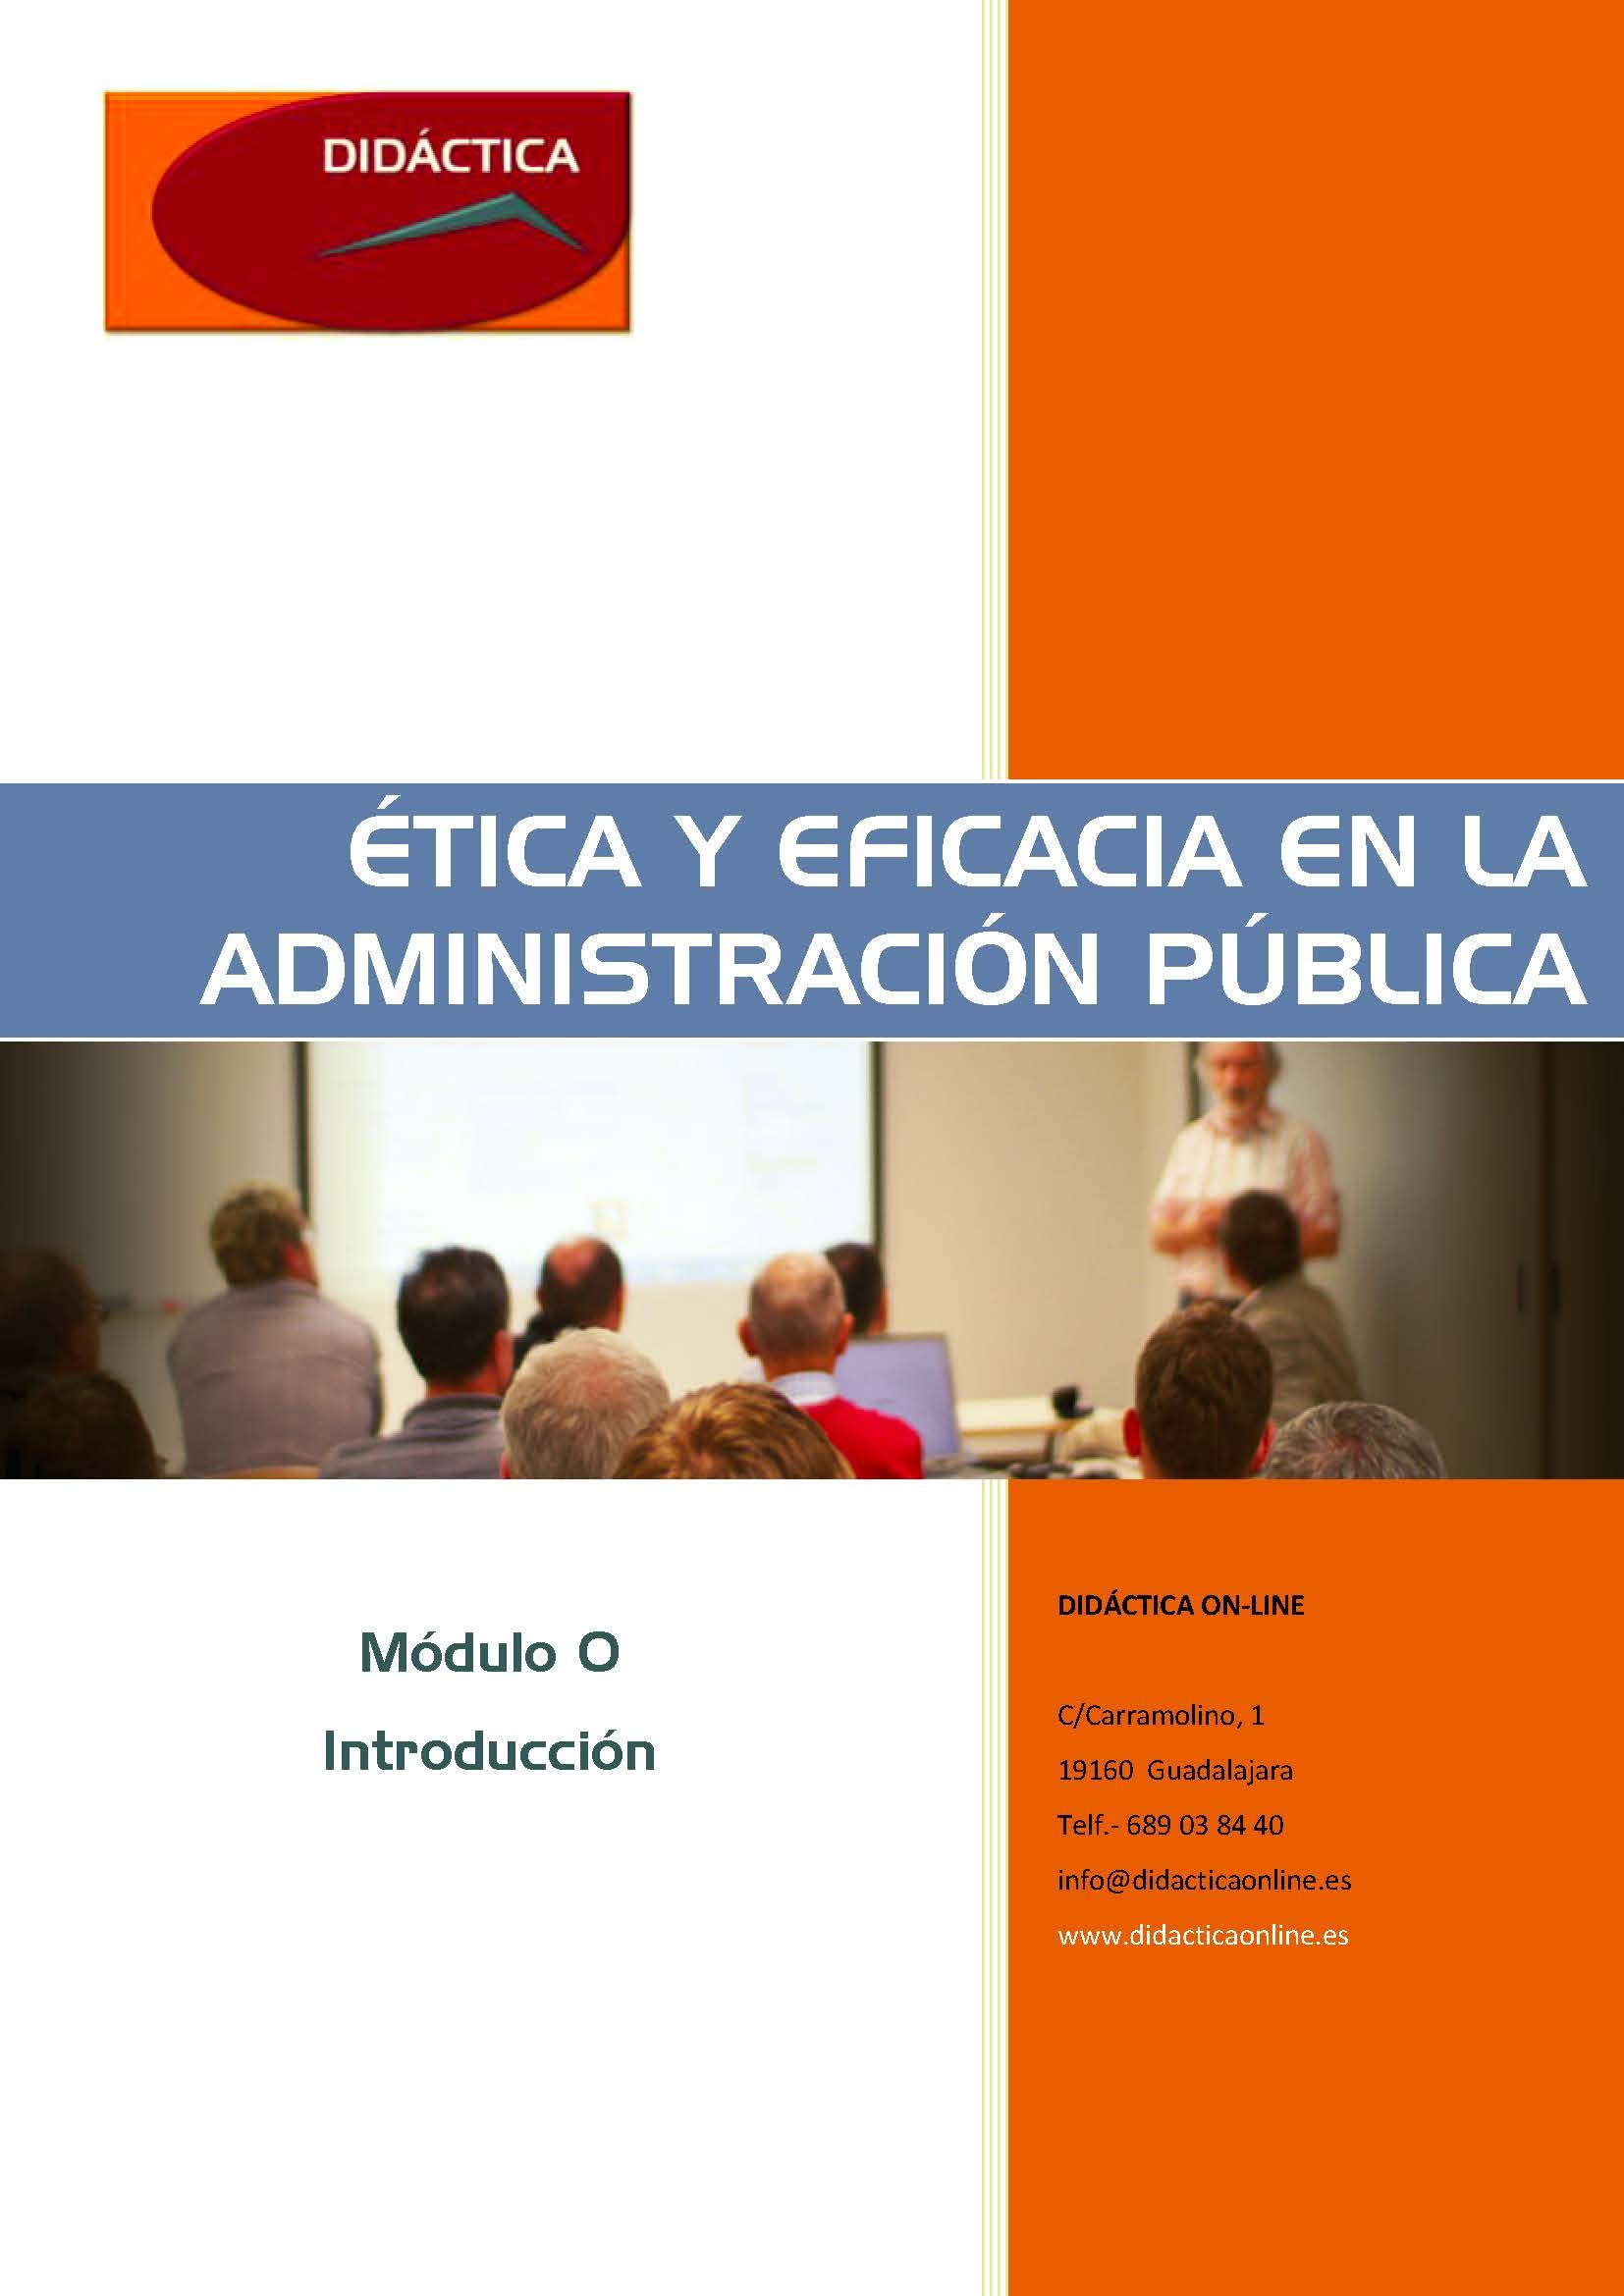 Etica_y_Eficacia_en_la_Administracion_Publica_Pagina_001